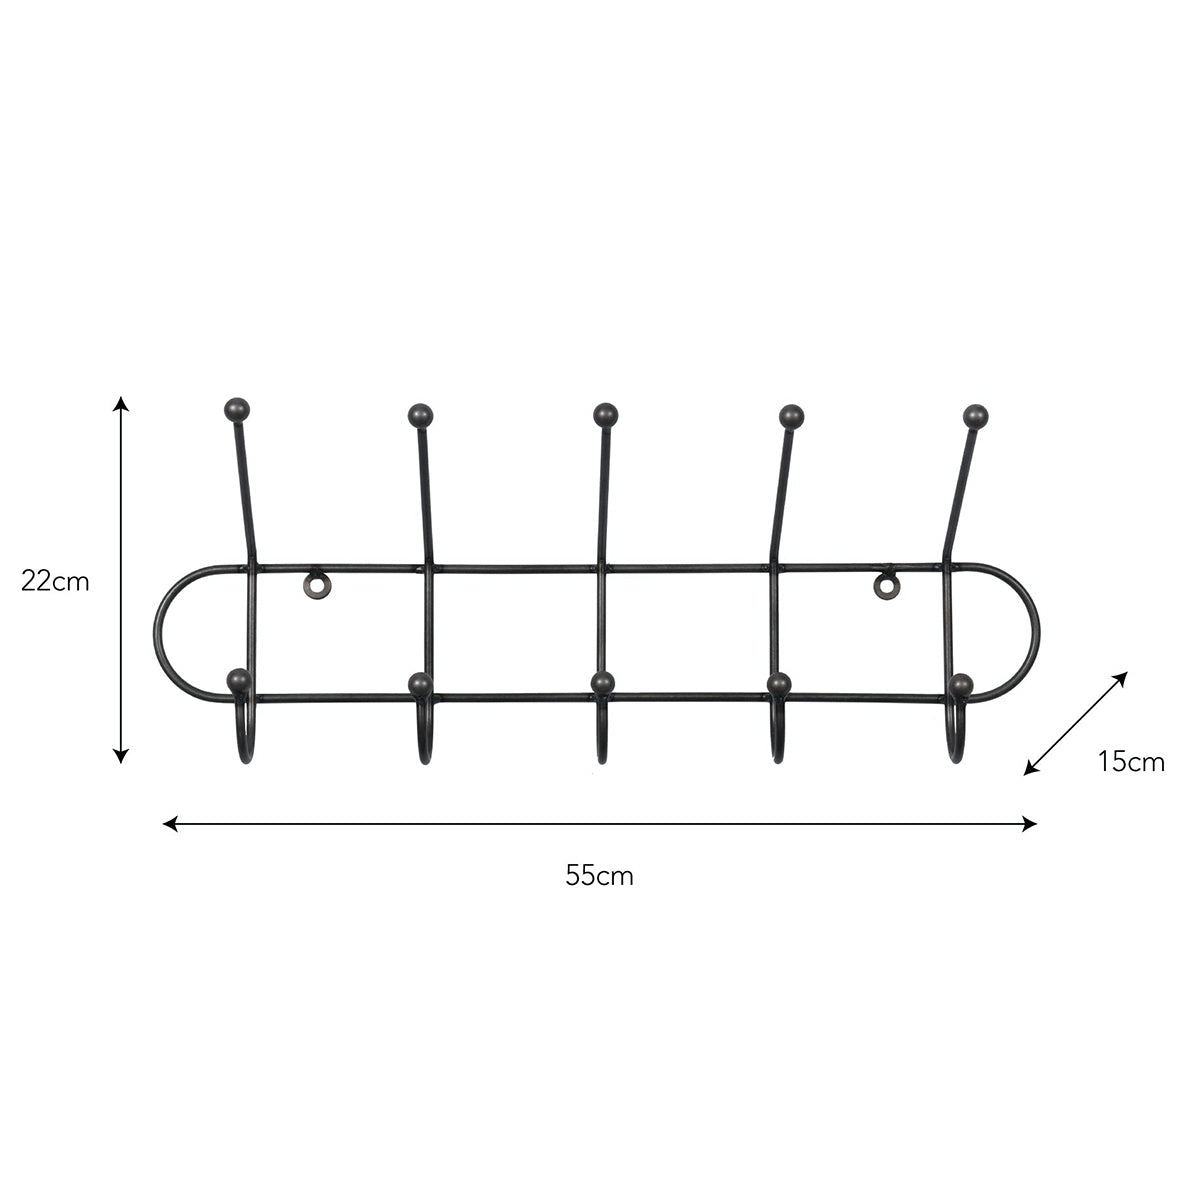 steel coat rack measurements